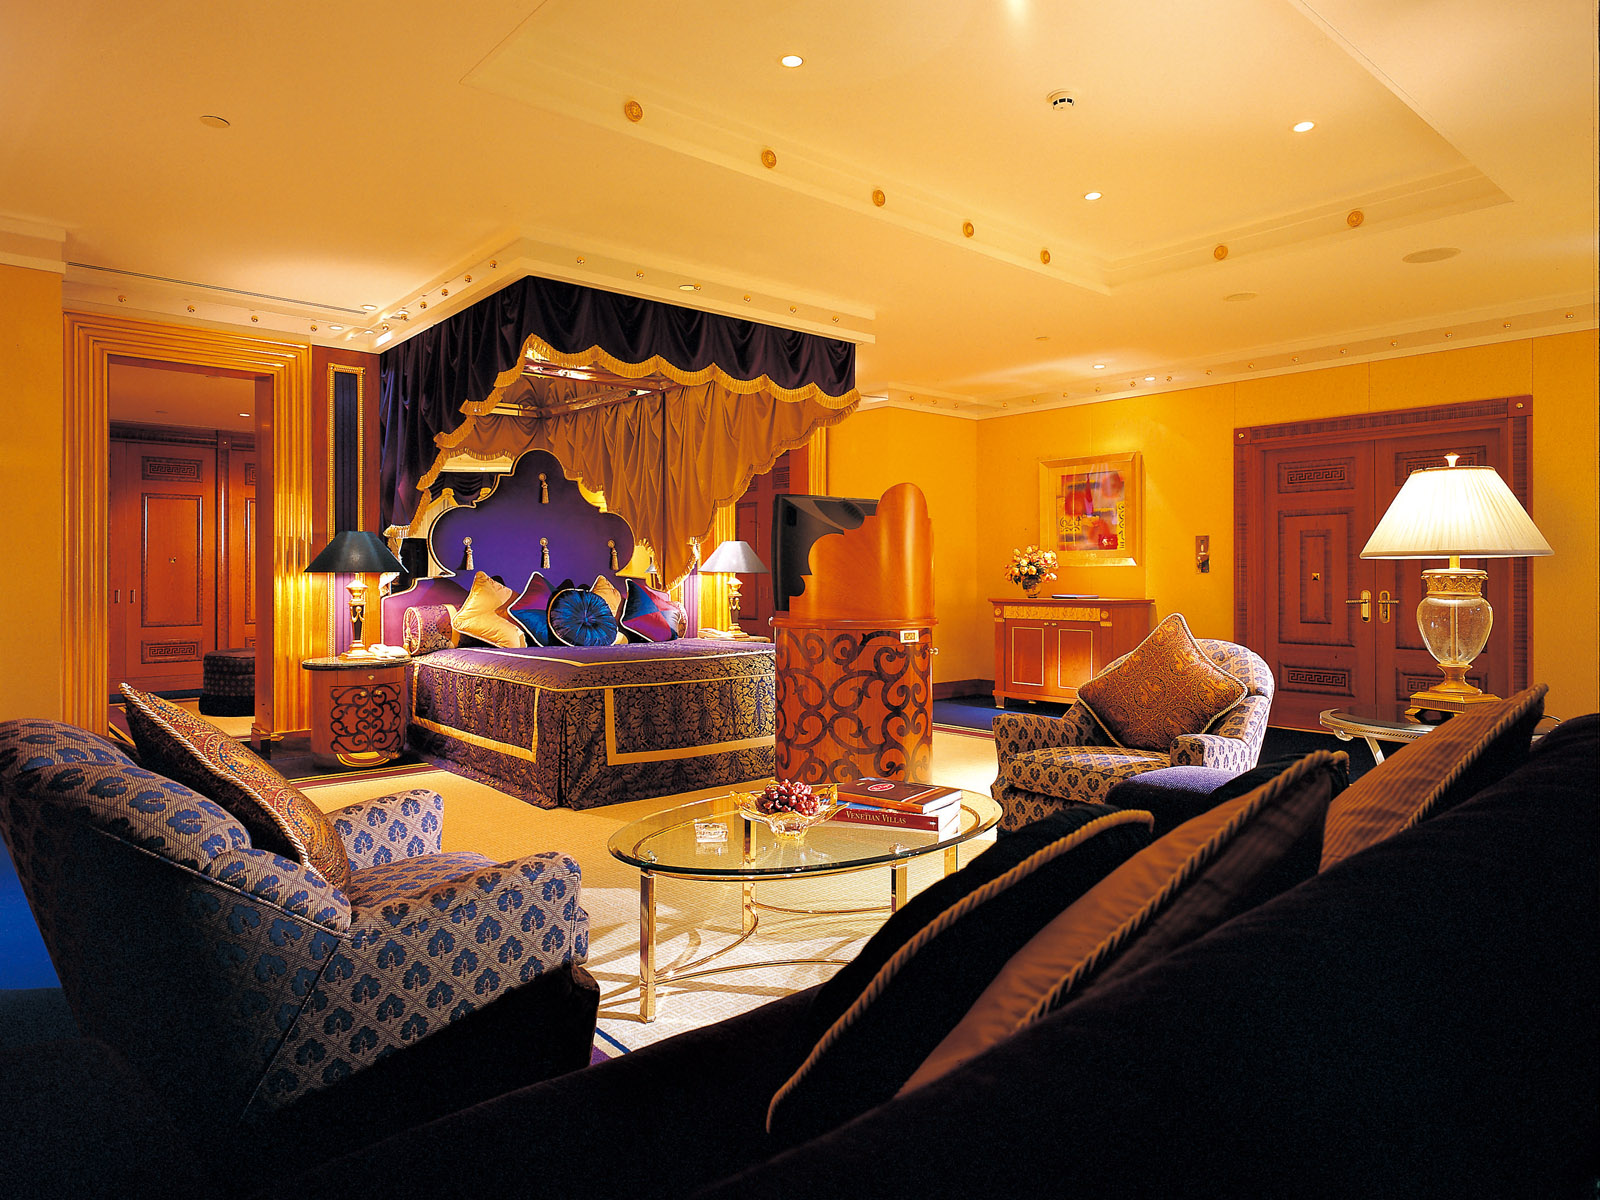 世界上最豪华七星级酒店迪拜塔高清晰壁纸